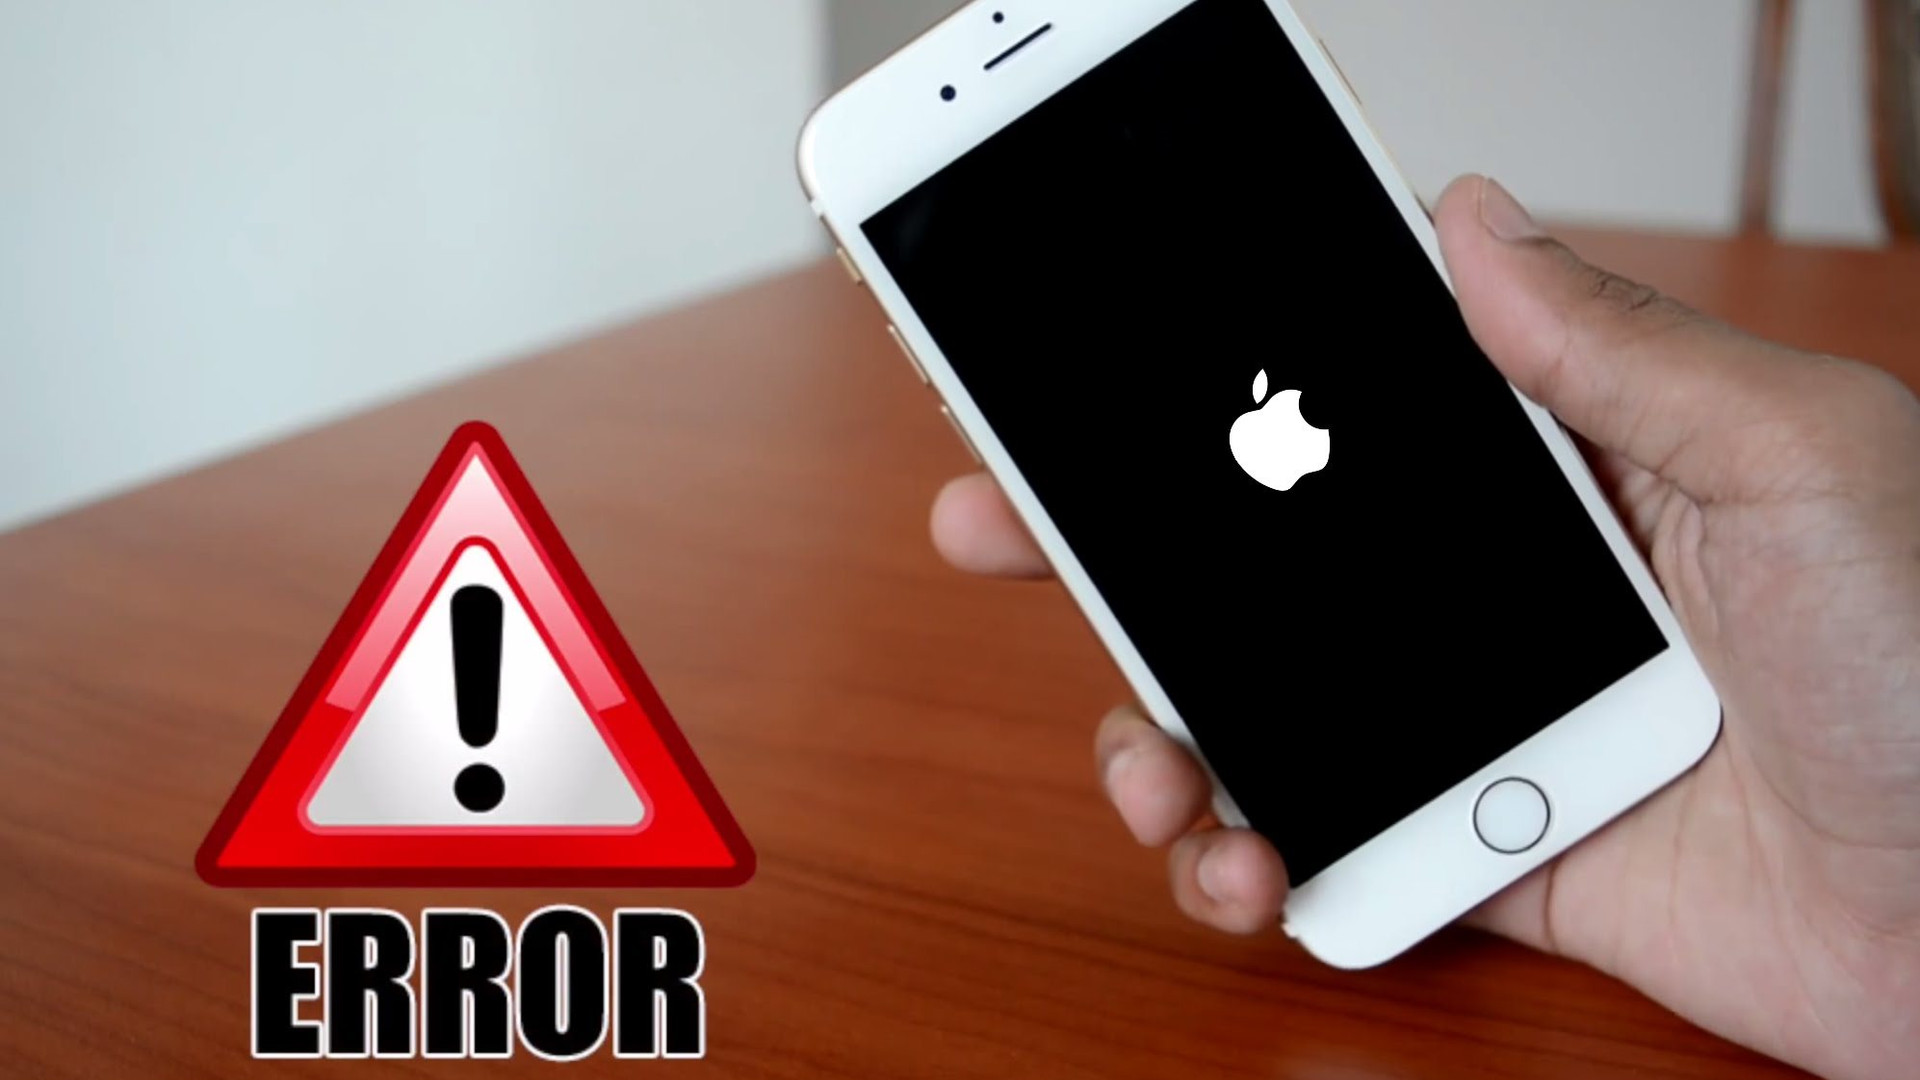 Nóng: Người dùng iPhone đang bị phần mềm gián điệp nhắm đến, Apple phát cảnh báo toàn cầu! - Ảnh 1.